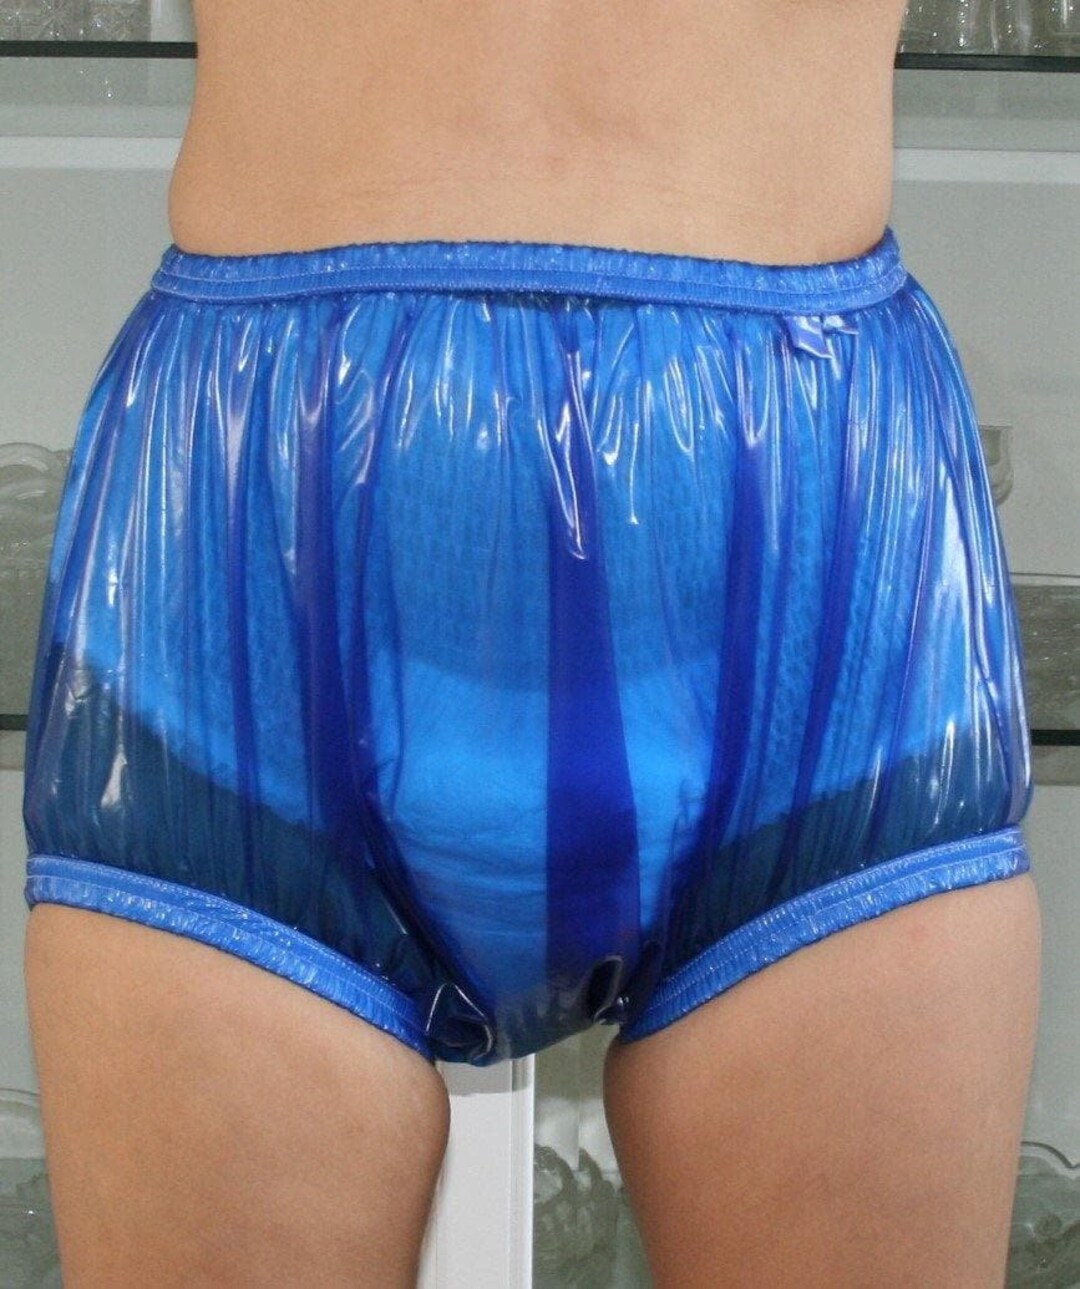 Rubber PVC Adult Baby Euroflex Incontinence Diaper Pants Rubber Pants Blue  Transparent -  Denmark